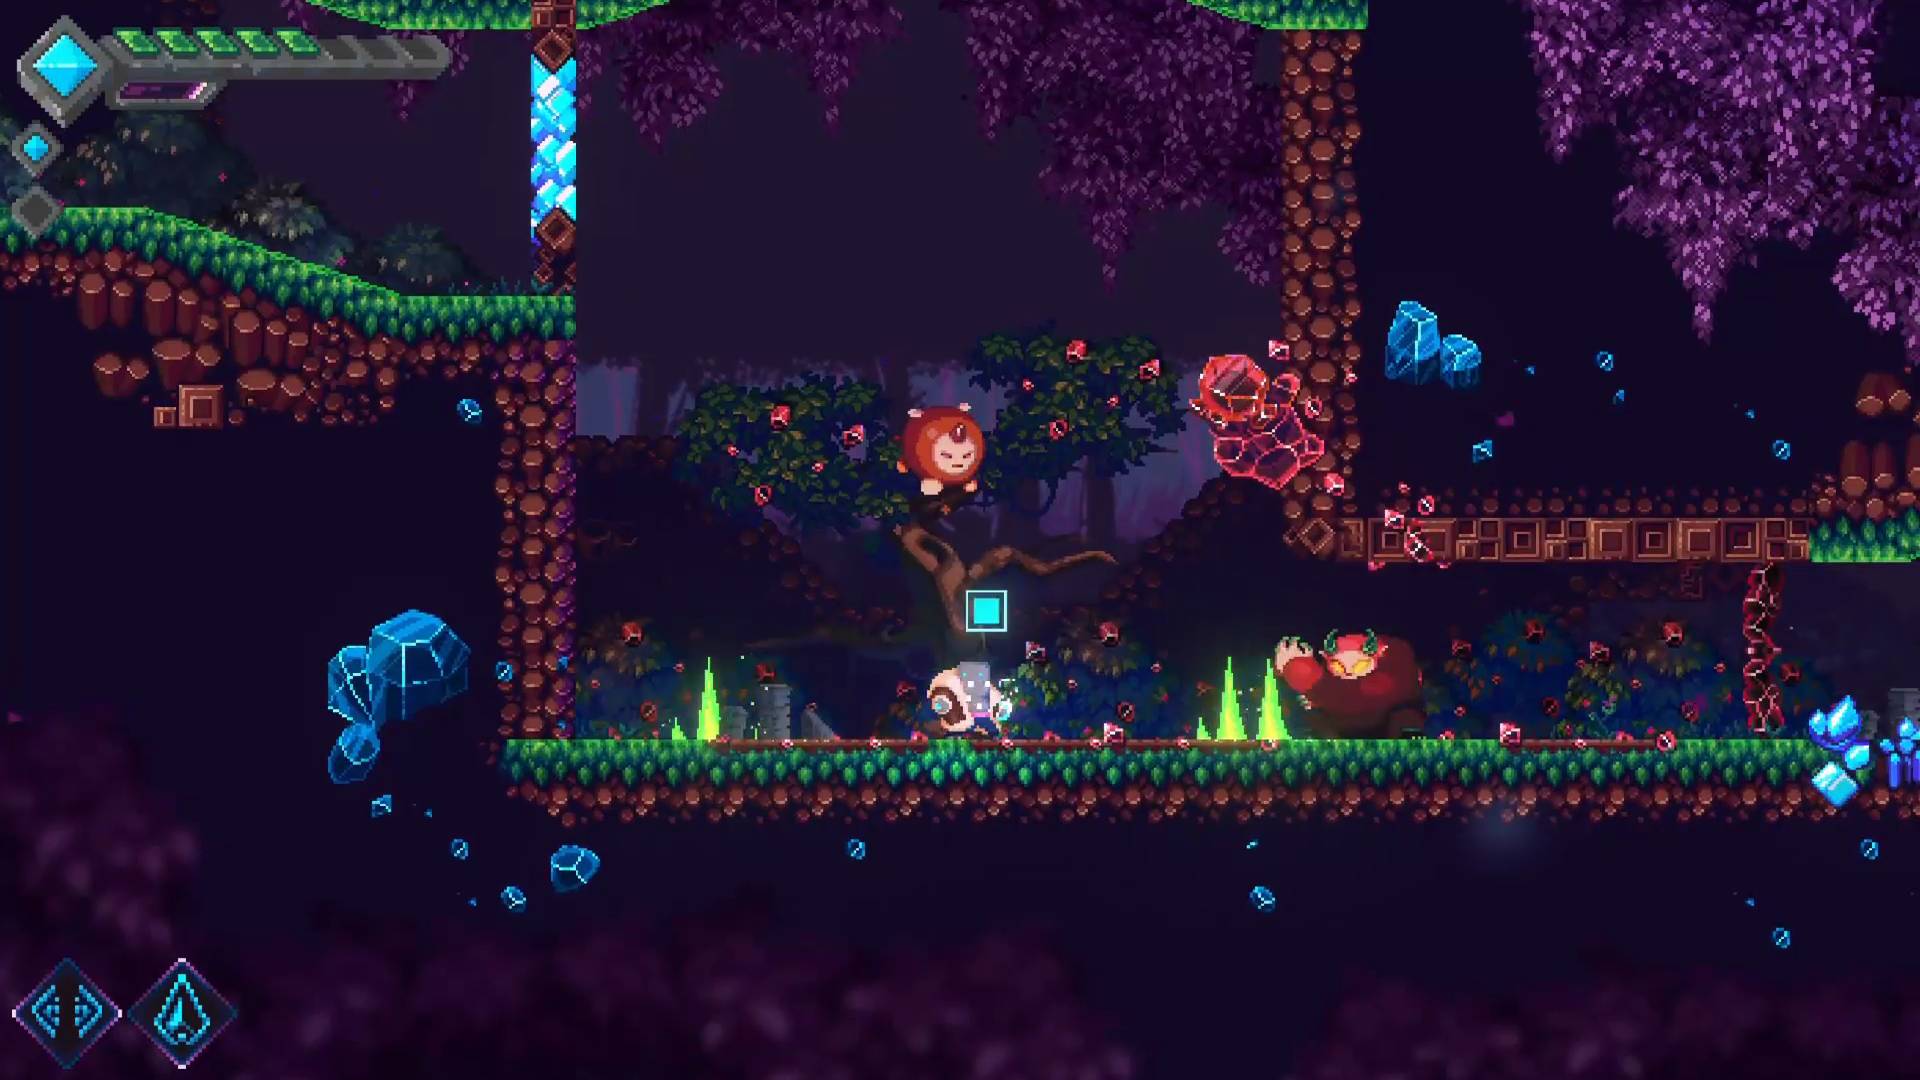 Mega Man und Doom kollidieren in einem neuen Indie-Plattformer: Eine Videospielfigur mit blauen Pixeln steht in einem grünen Waldgebiet, während ein Feind, der wie eine Mischung aus Biene und Bär aussieht, zuschaut.